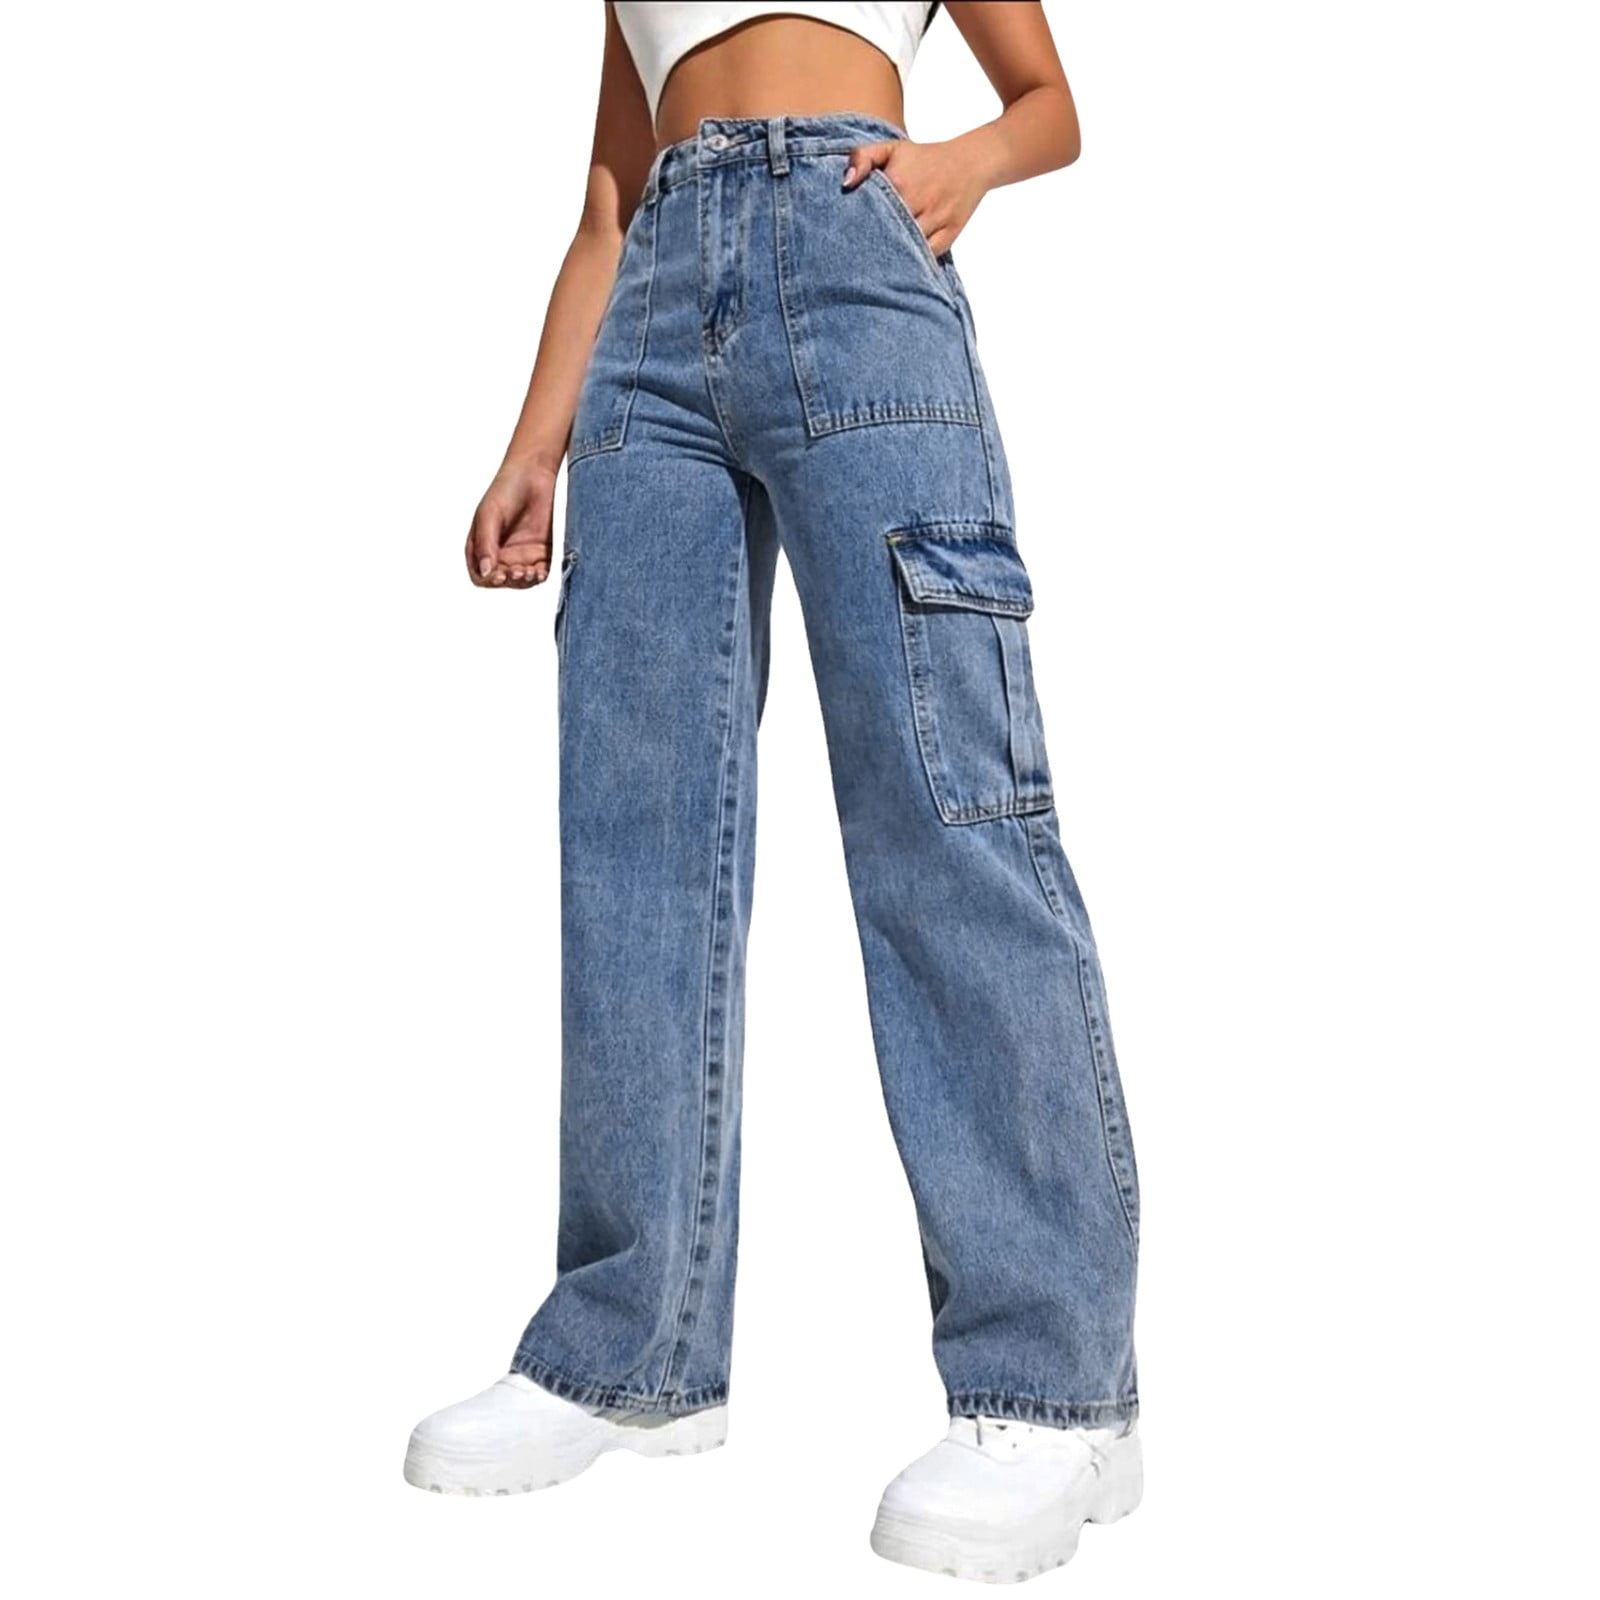 wozhidaoke cargo pants women womens pockets jeans trousers casual high ...